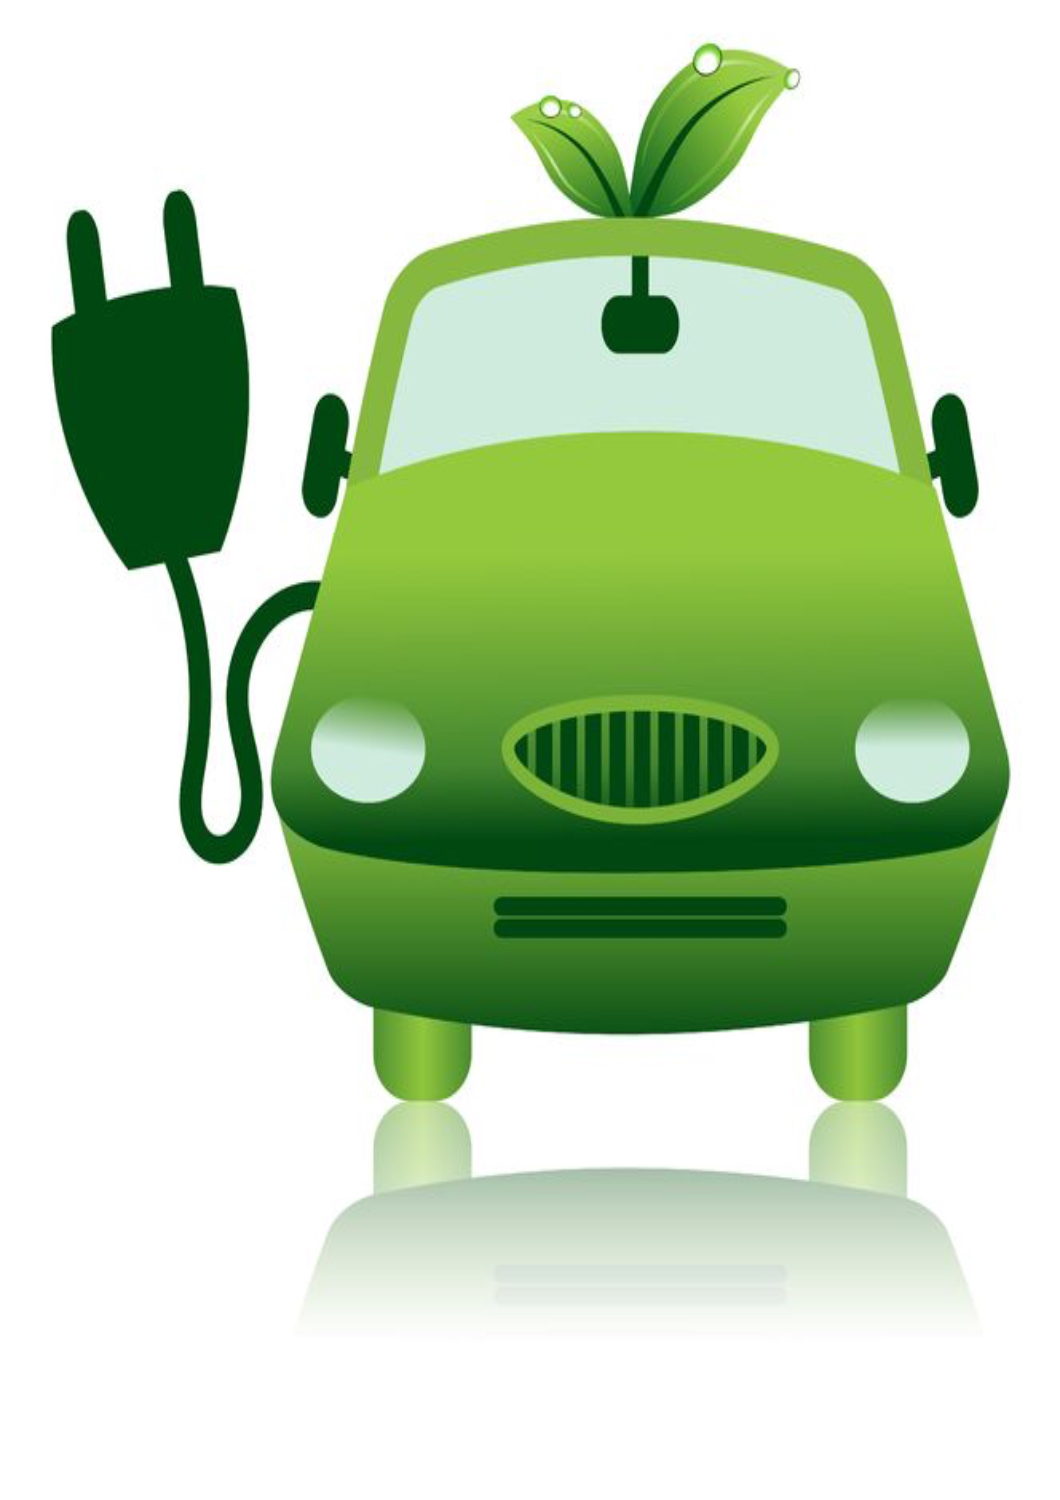 Overgangen fra benzinbiler til elbiler